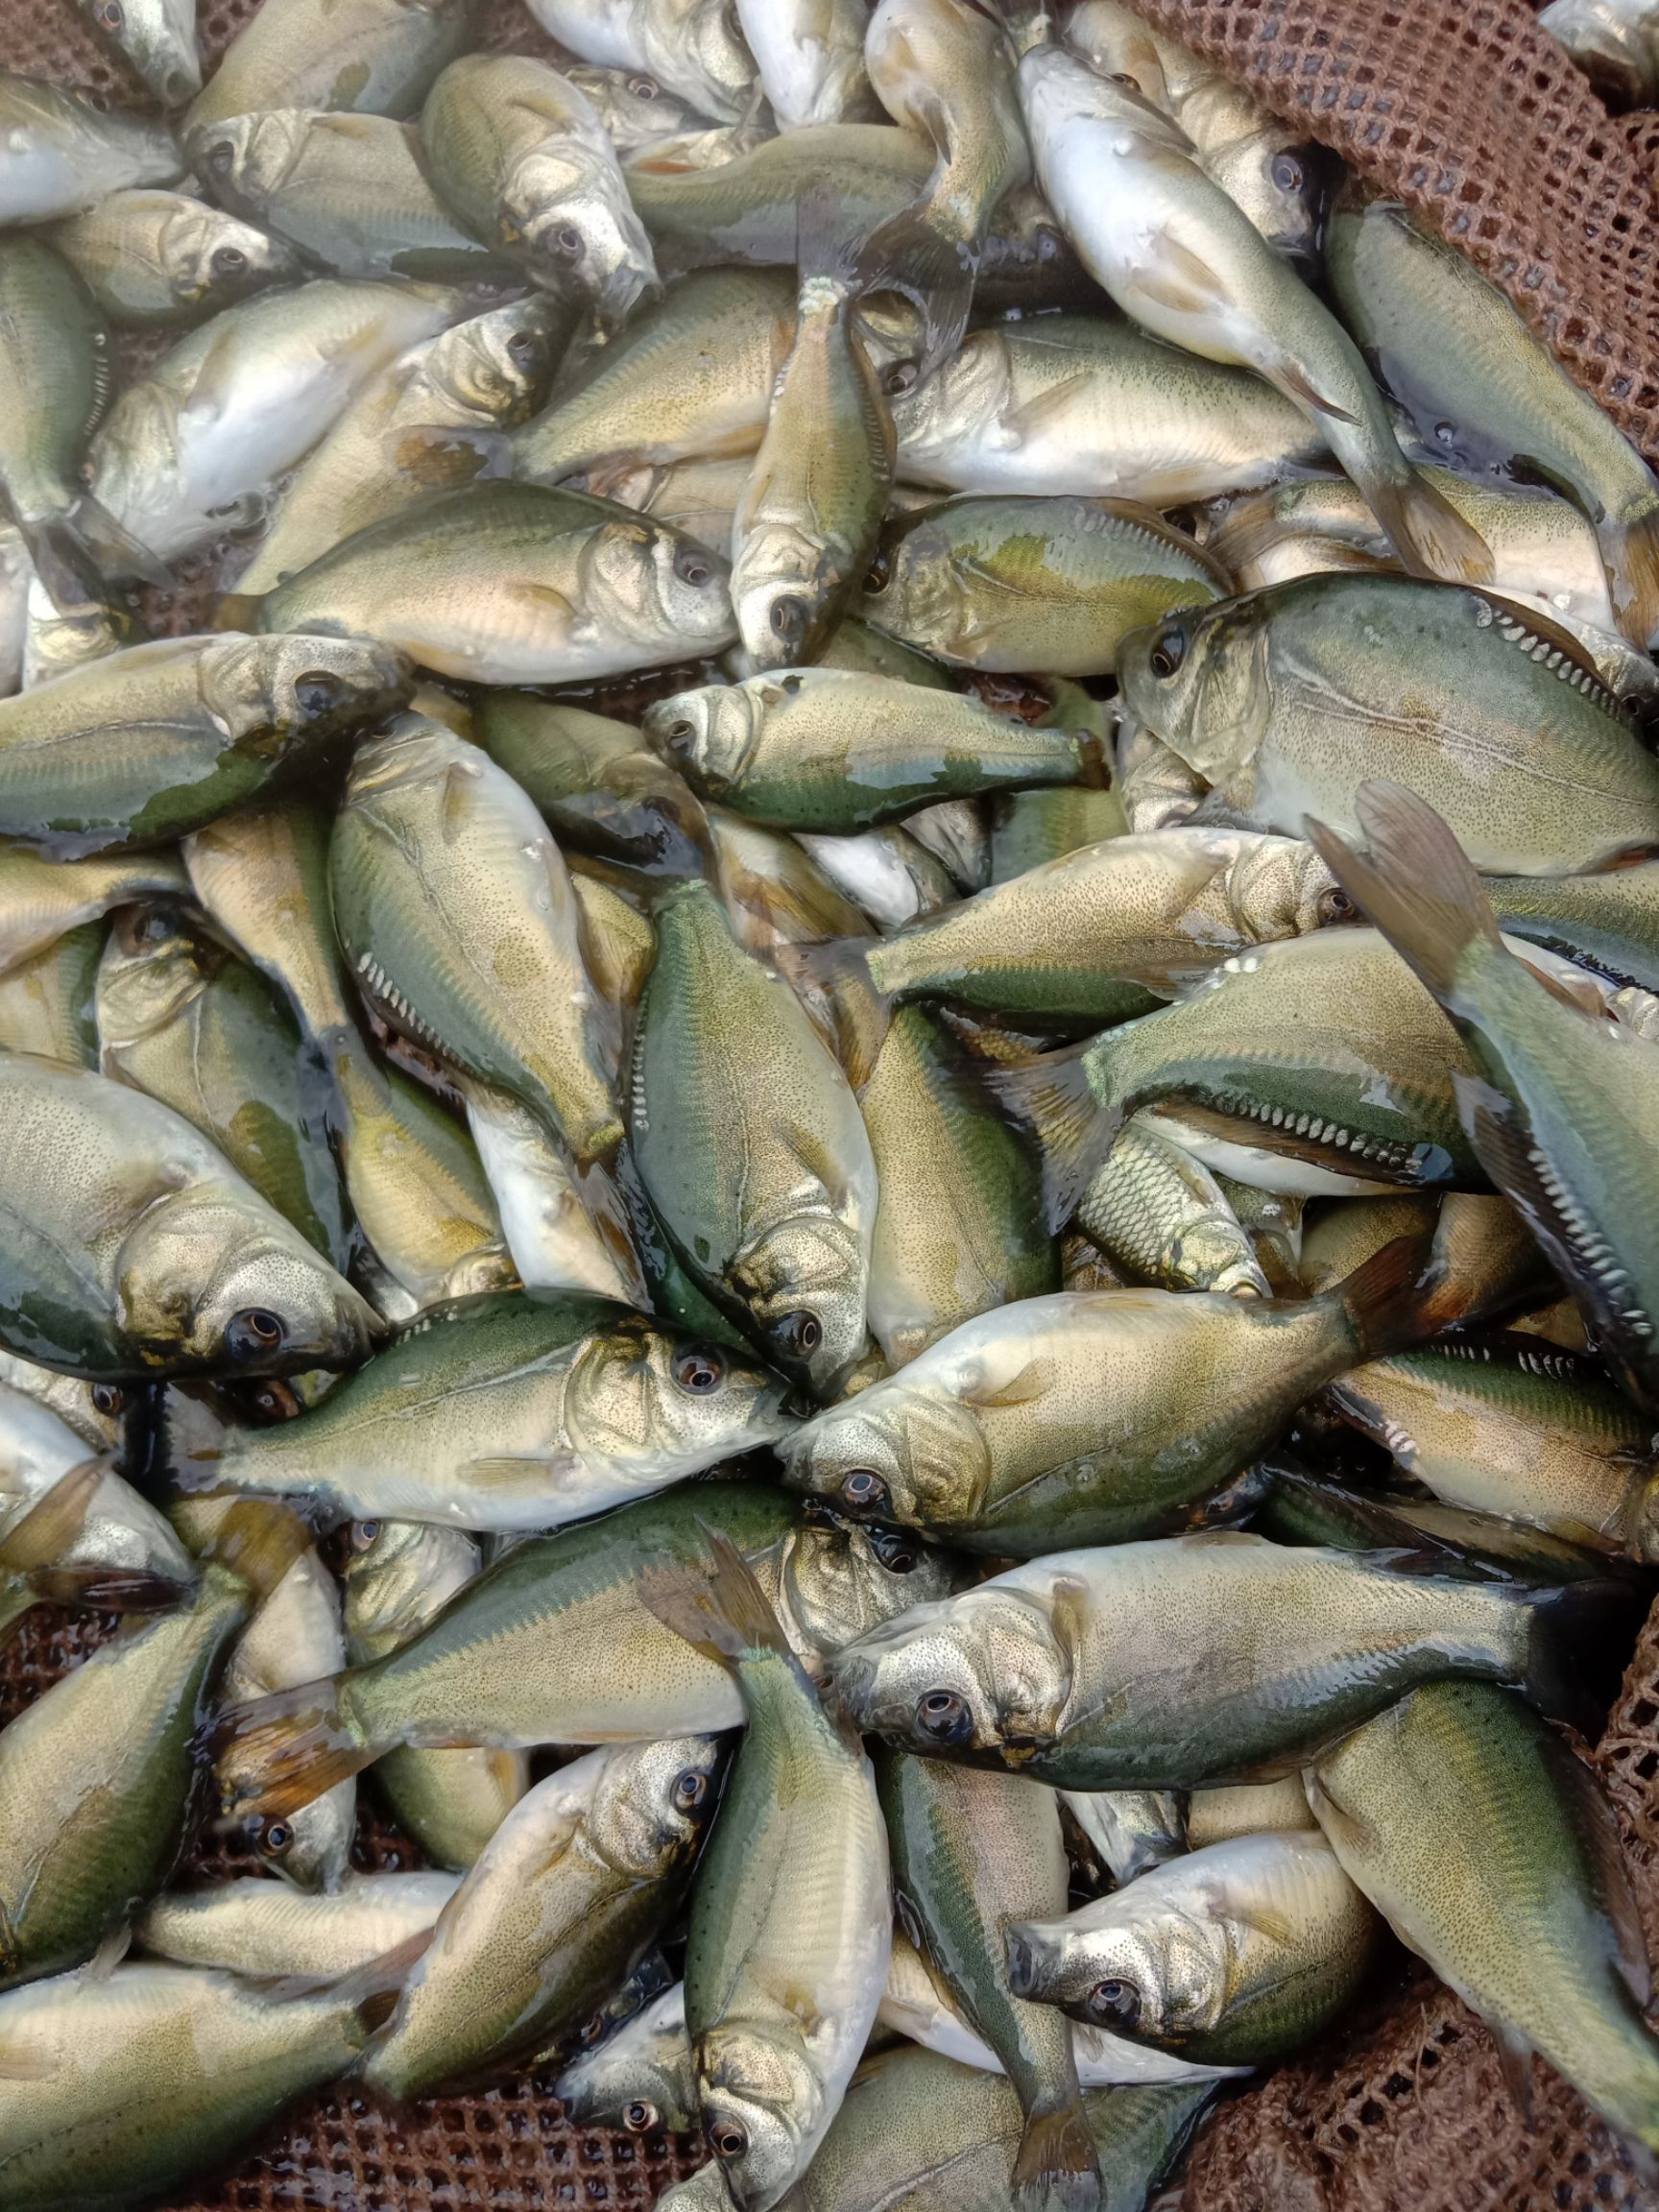 裸鲤 本养殖场大量出售裸斑鱼苗,6-8厘米以及各种鱼苗大量出售